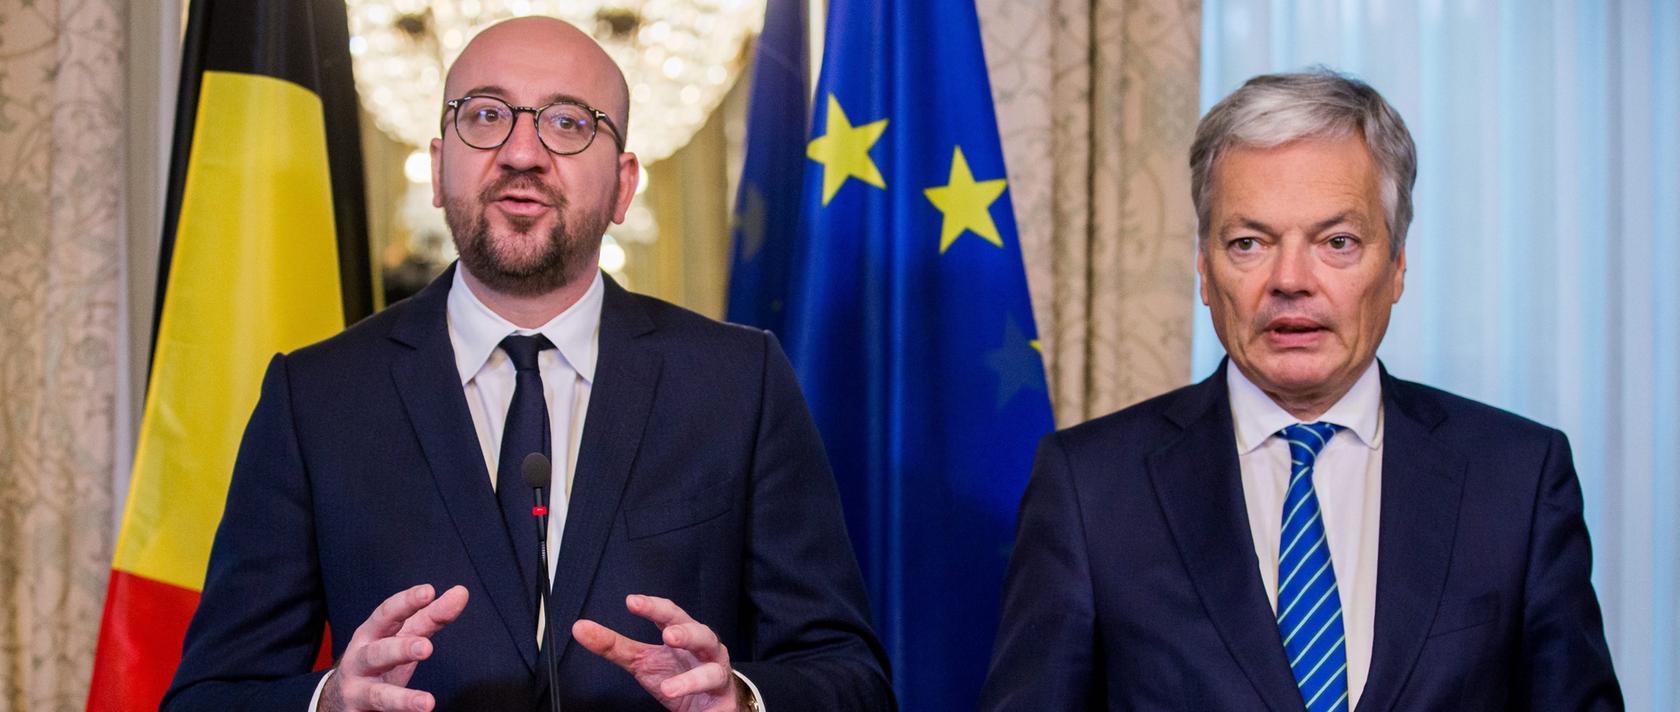 Belgiens Premierminister Charles Michel verkündet gemeinsam mit Didier Reynders die frohe Botschaft: Nach Verhandlungen kann Belgien "Ceta" zustimmen.